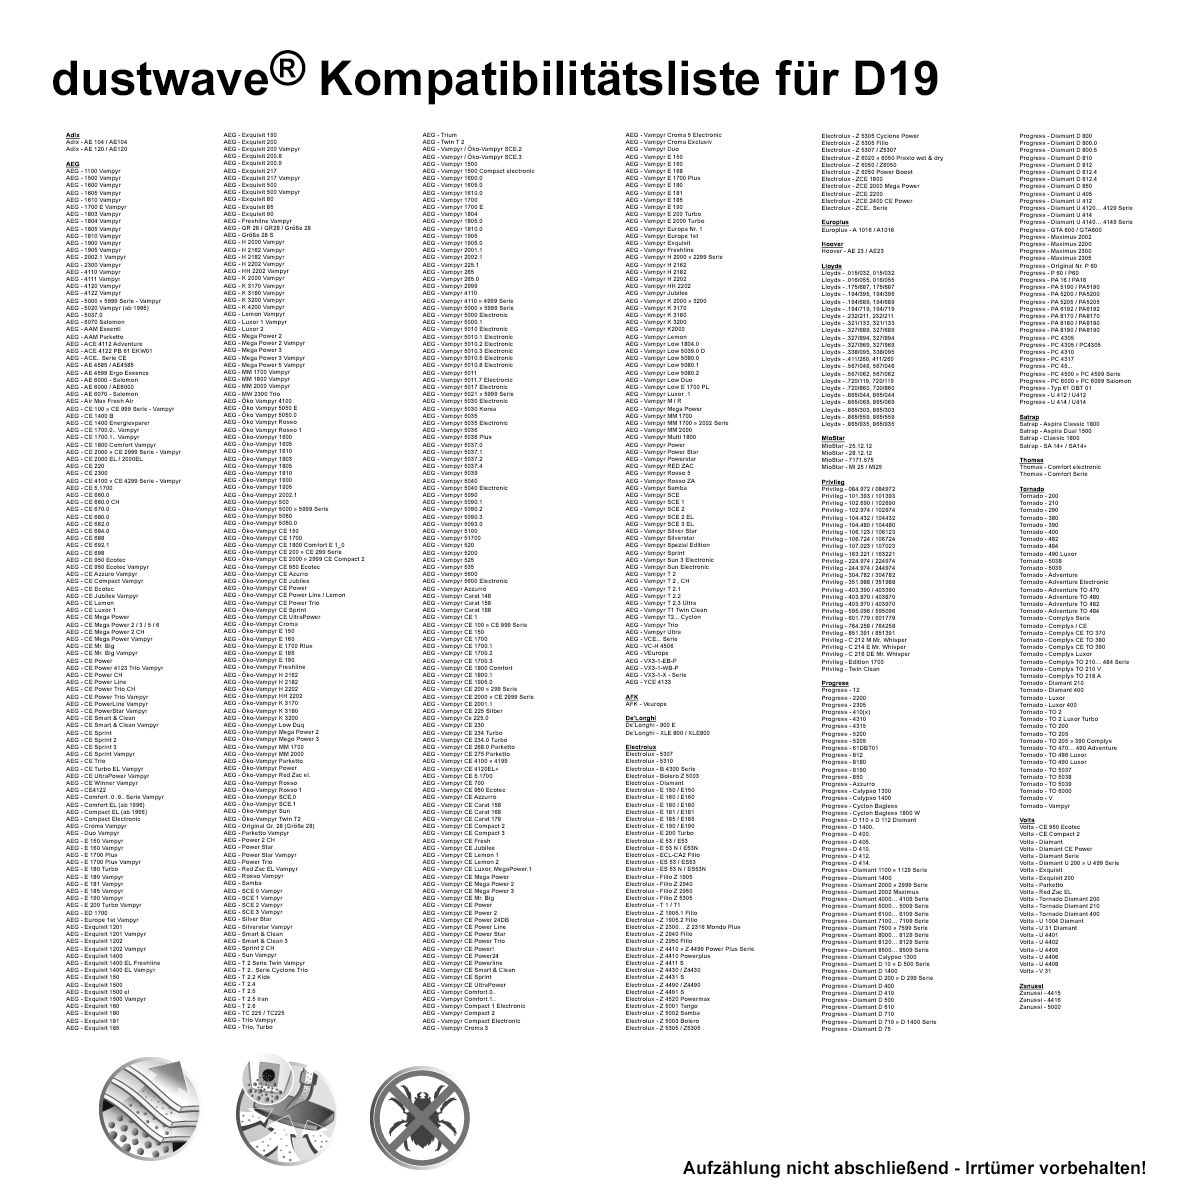 Dustwave® 20 Staubsaugerbeutel für AEG E 200 Turbo Vampyr - hocheffizient, mehrlagiges Mikrovlies mit Hygieneverschluss - Made in Germany